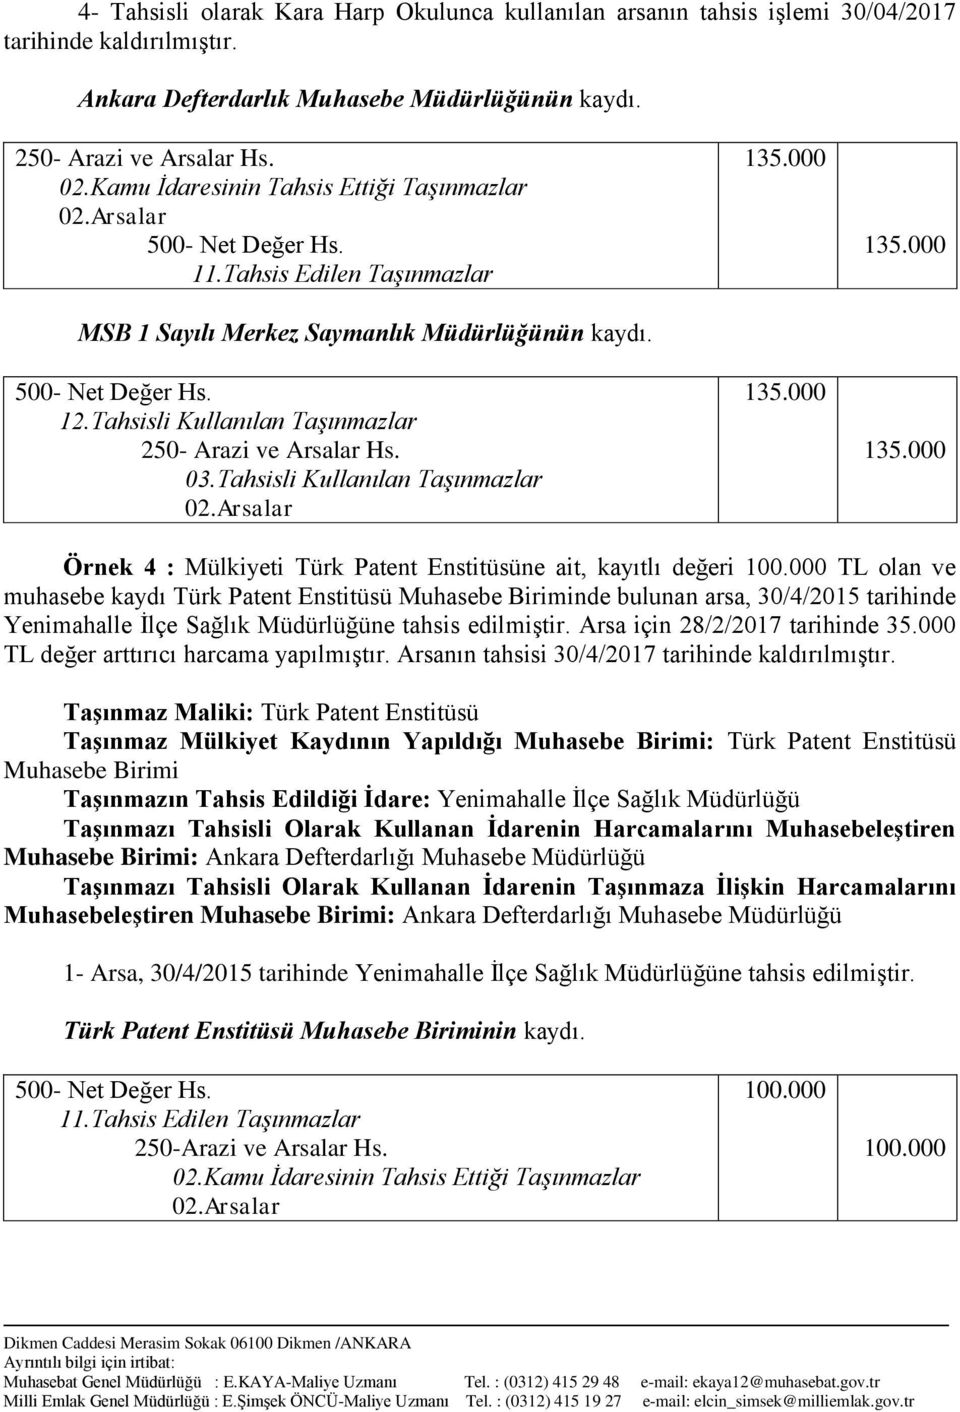 1 1 1 1 Örnek 4 : Mülkiyeti Türk Patent Enstitüsüne ait, kayıtlı değeri TL olan ve muhasebe kaydı Türk Patent Enstitüsü Muhasebe Biriminde bulunan arsa, 30/4/2015 tarihinde Yenimahalle İlçe Sağlık